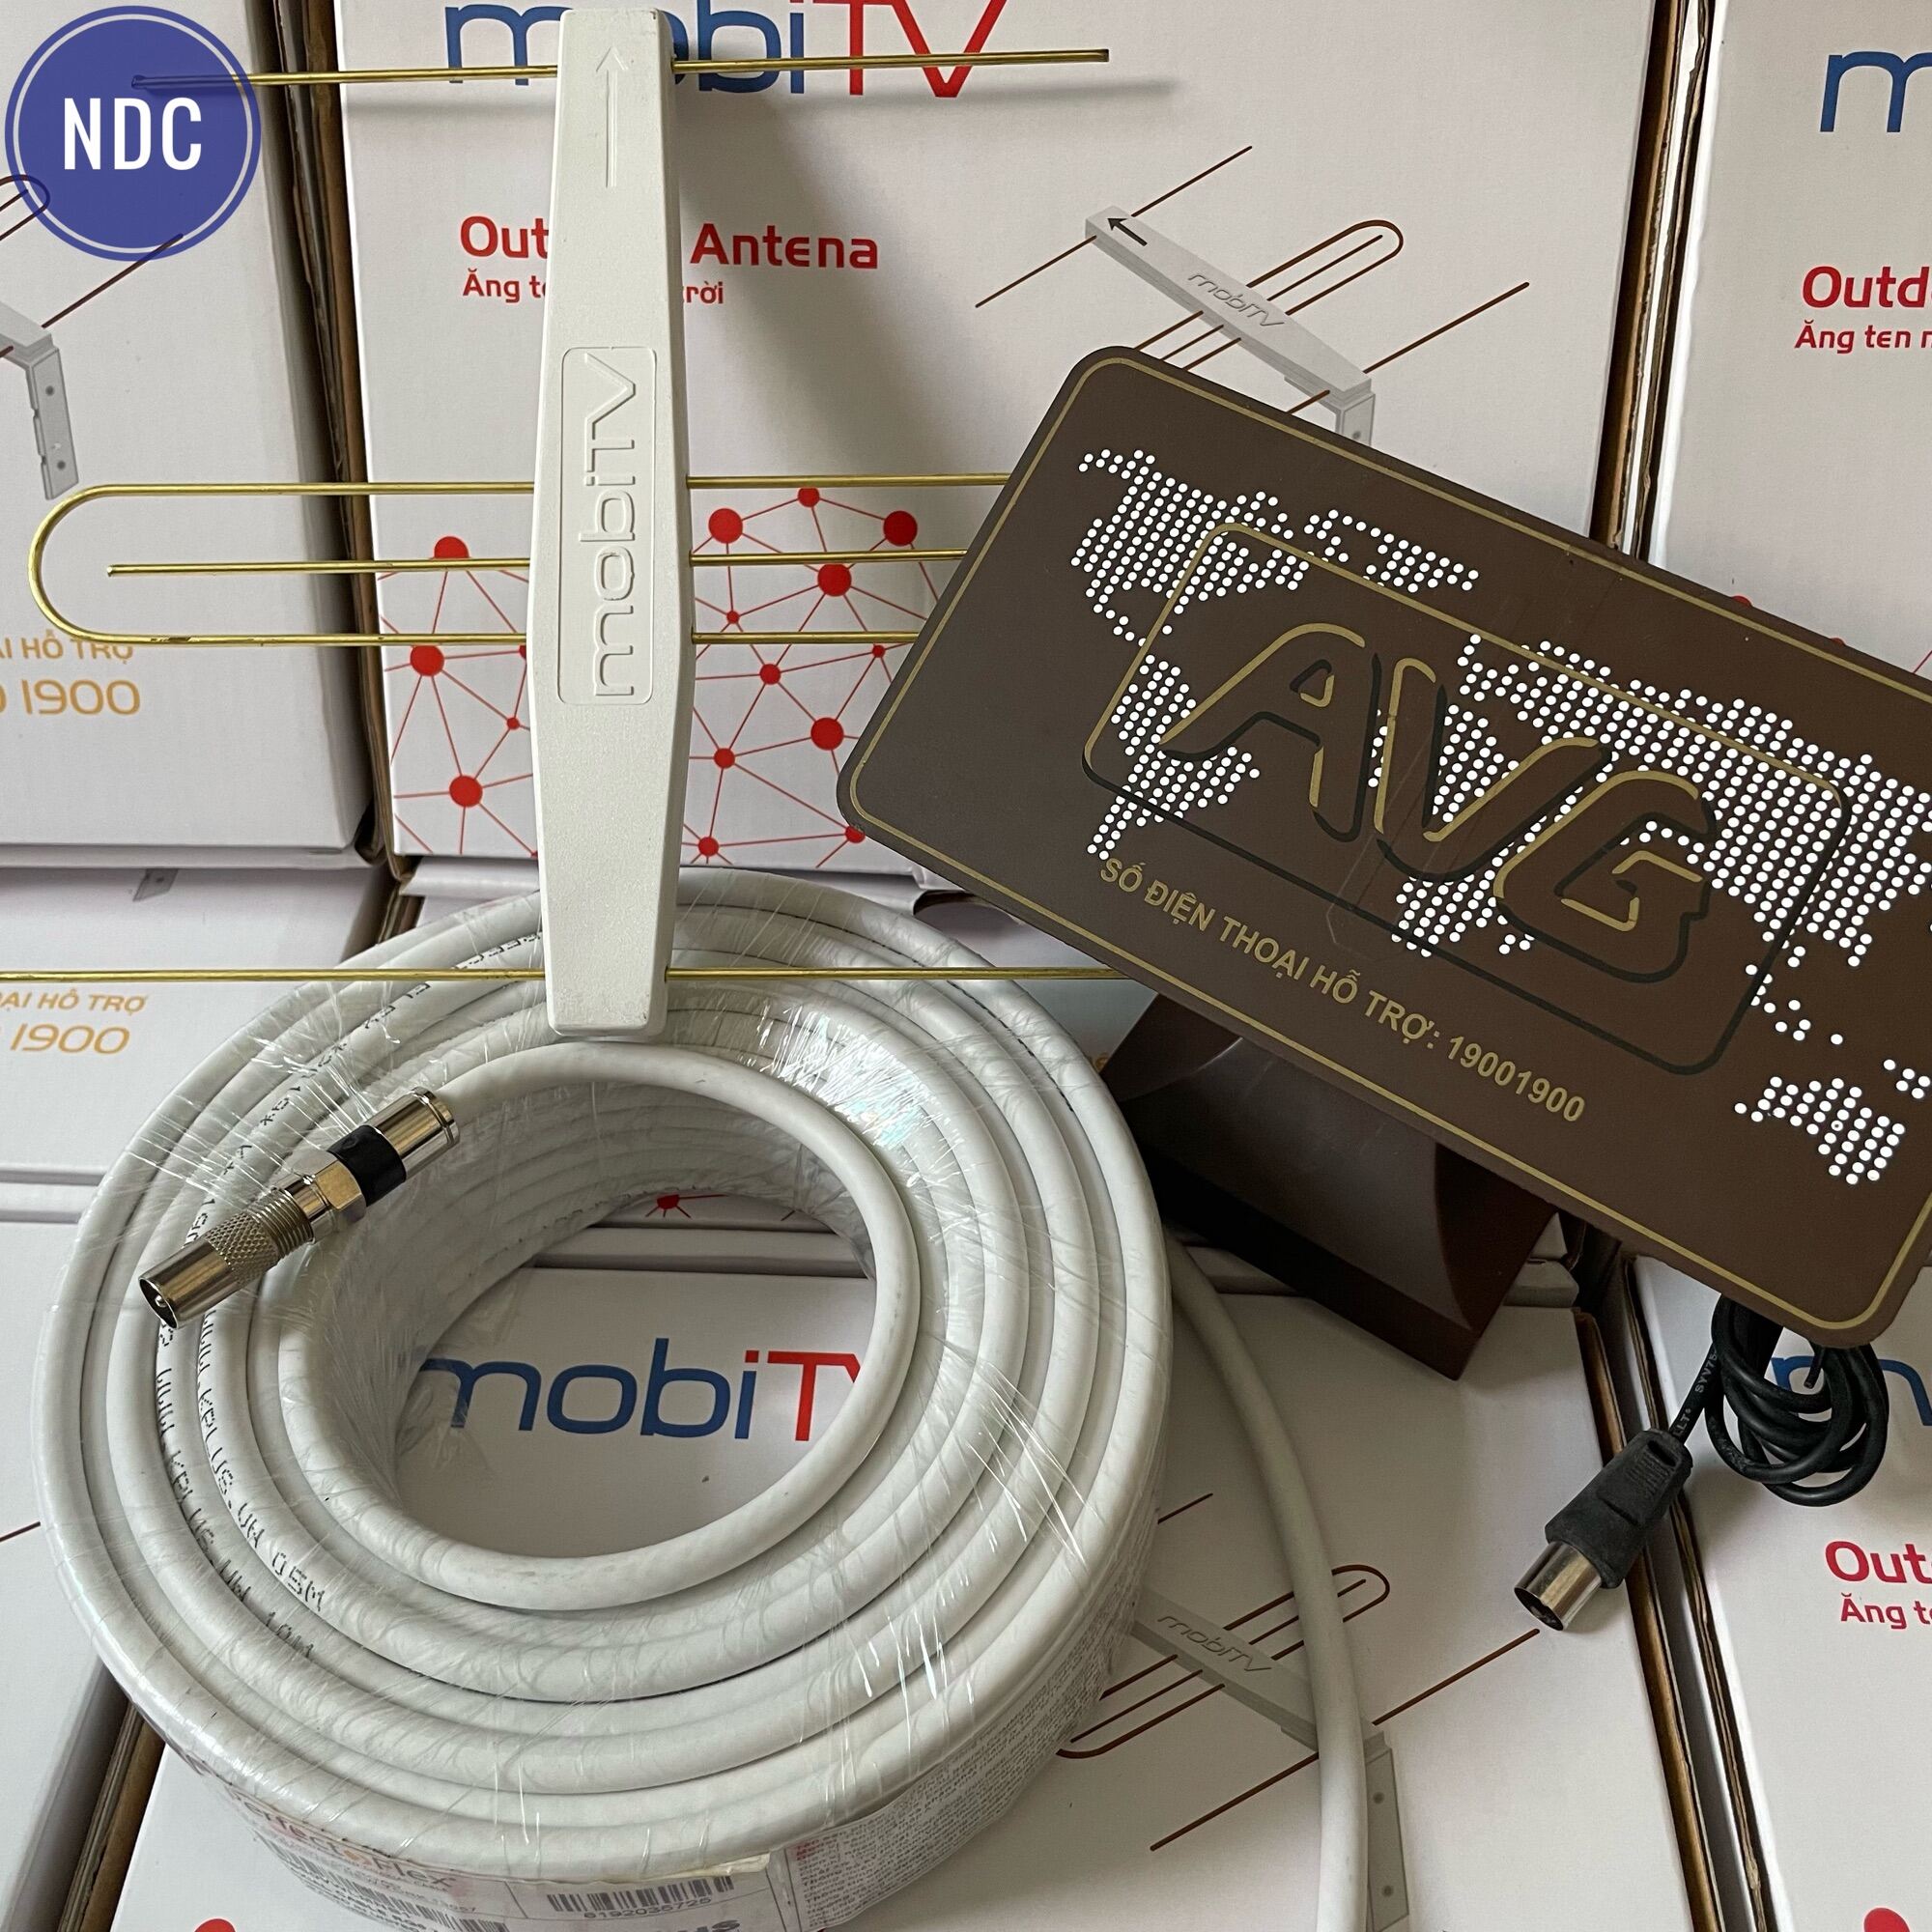 Anten mobiTV Thu Sóng Mặt Đất DVB-T2 (Có thể sử dụng trong nhà)